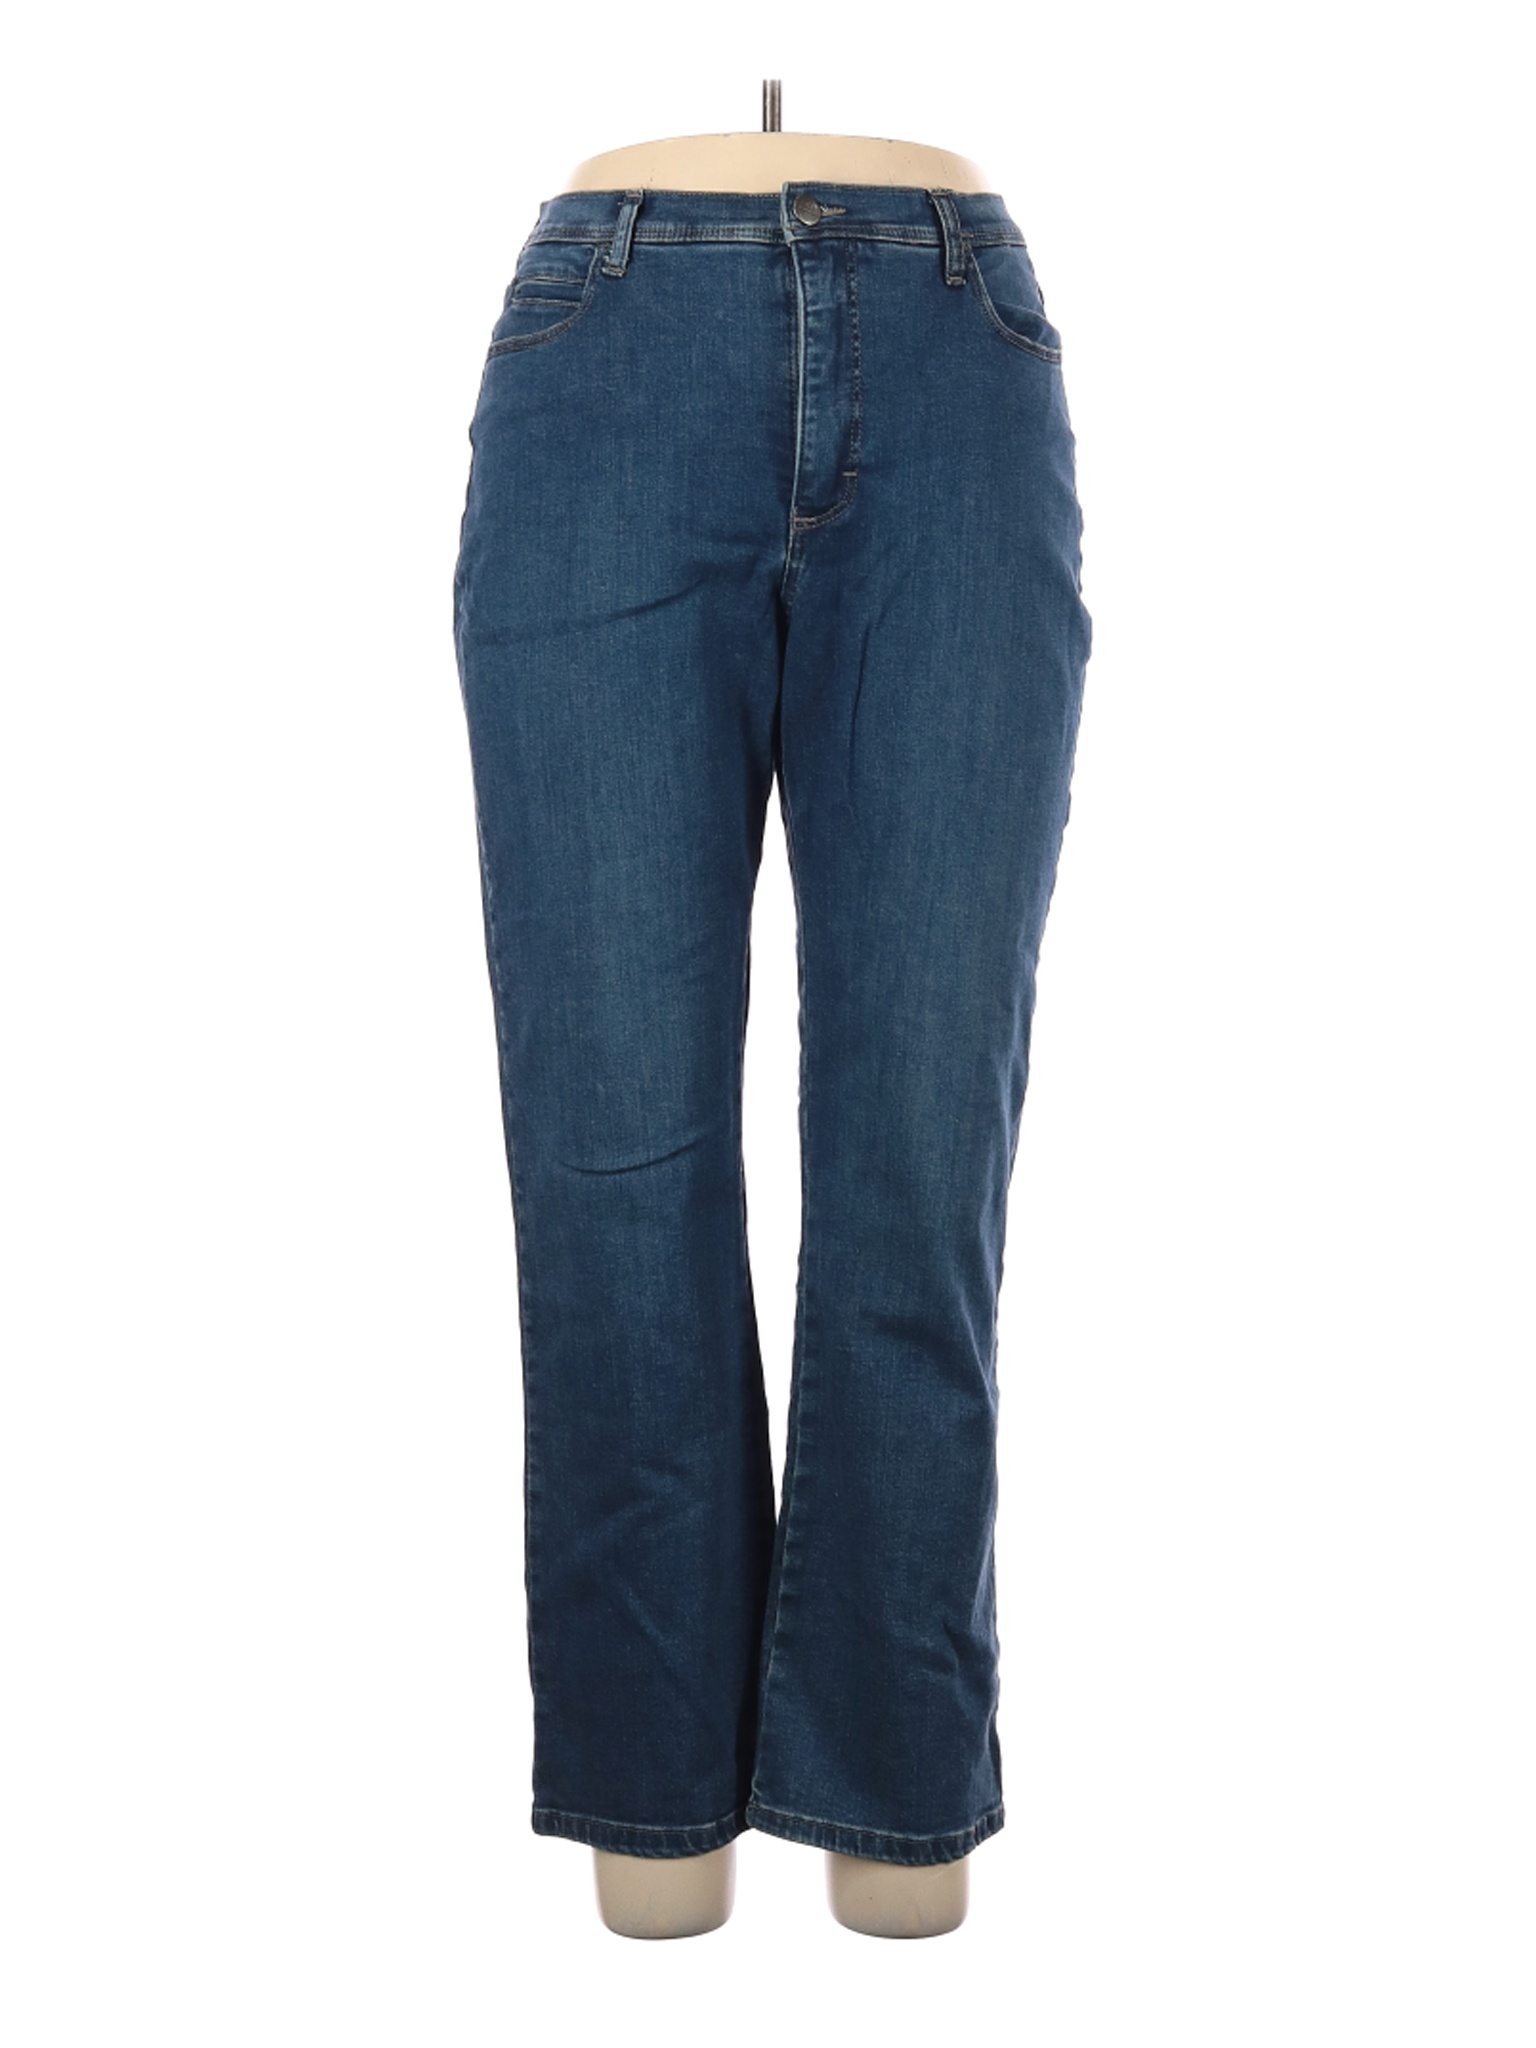 Lee Women Blue Jeans 16 | eBay